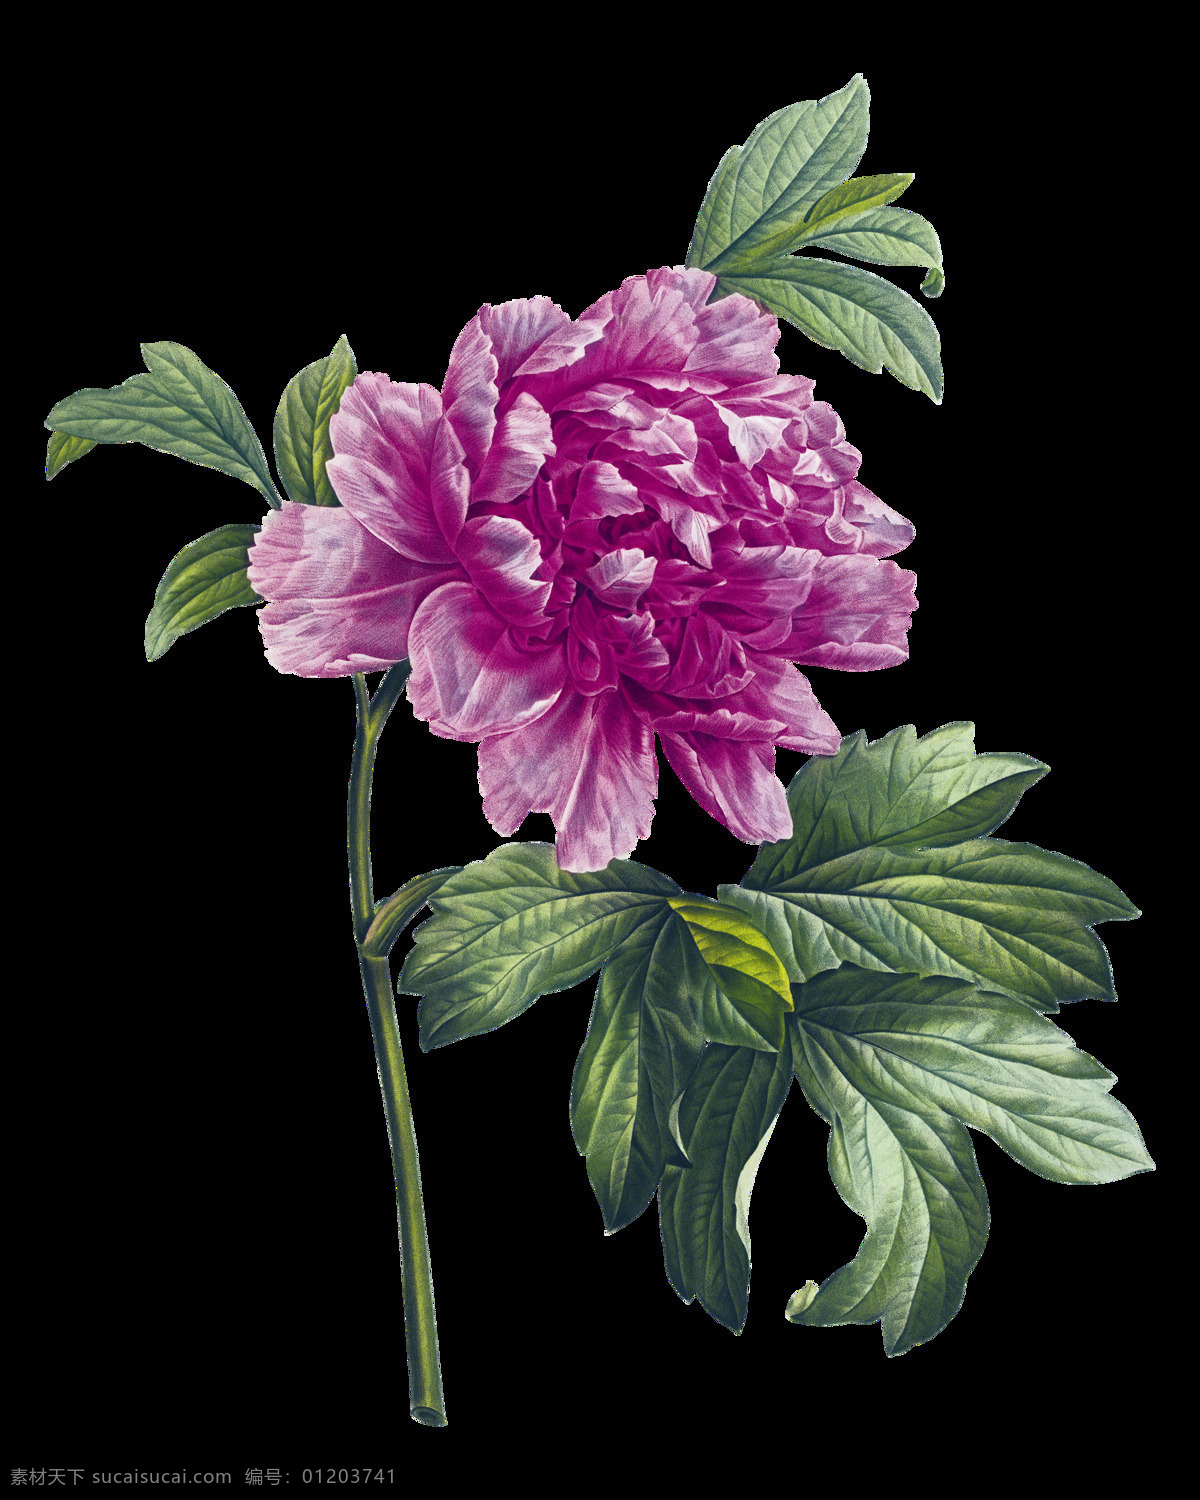 紫色 盛开 花朵 装饰 元素 含苞待放 梦幻花朵 手绘花朵 手绘花朵素材 水彩 鲜花花朵 鲜花花蕾 鲜花素材花卉